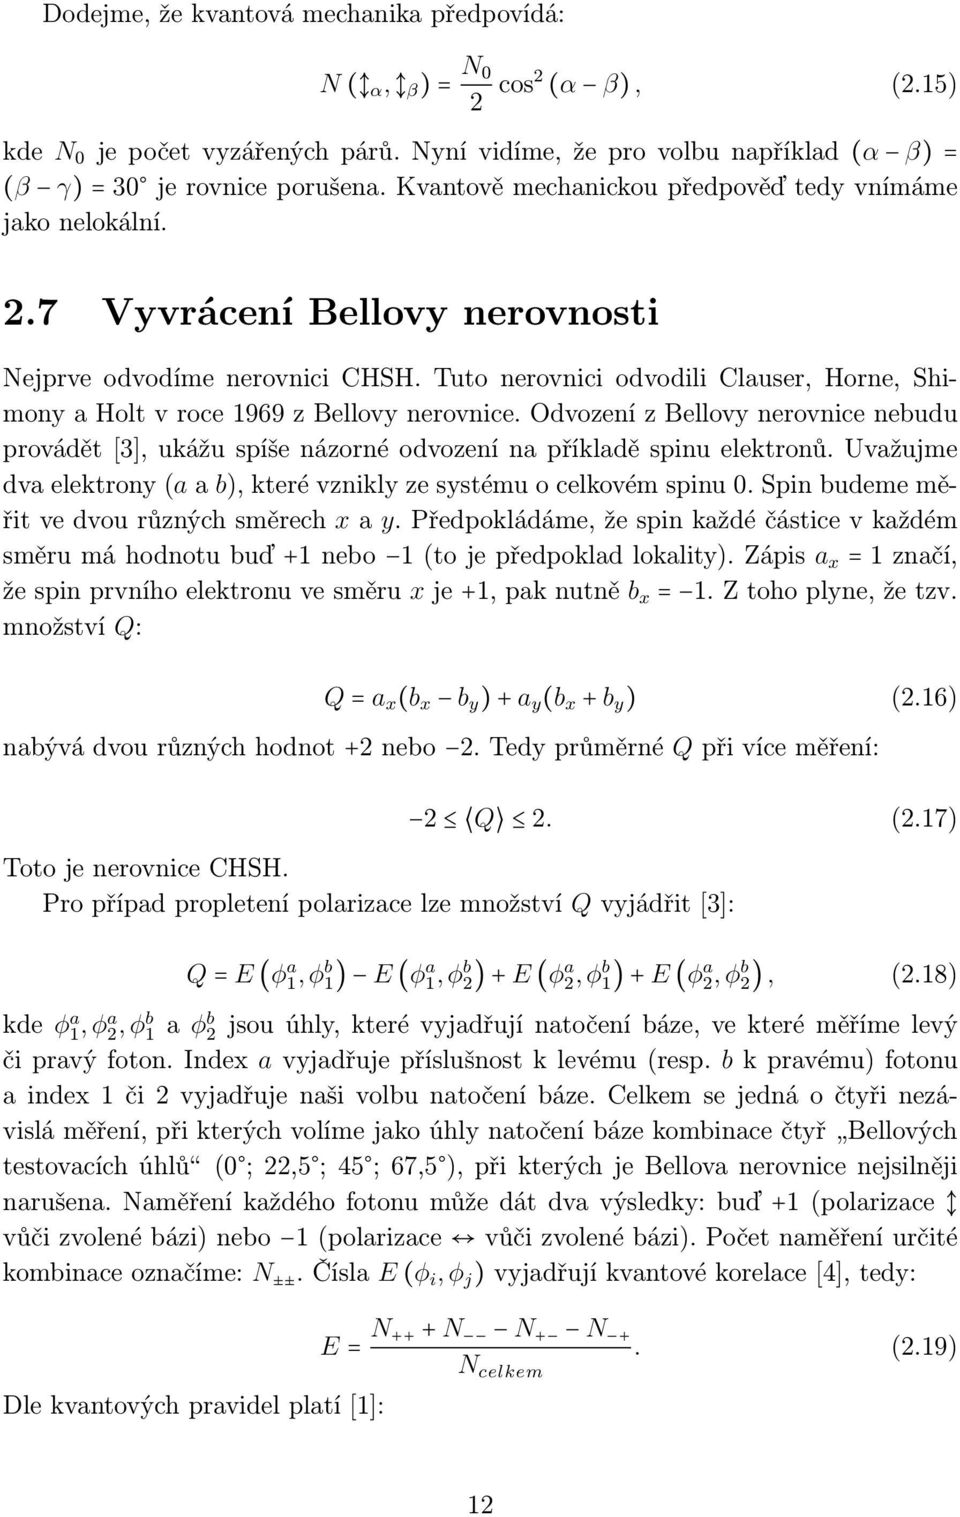 Tuto nerovnici odvodili Clauser, Horne, Shimony a Holt v roce 1969 z Bellovy nerovnice. Odvození z Bellovy nerovnice nebudu provádět[3], ukážu spíše názorné odvození na příkladě spinu elektronů.